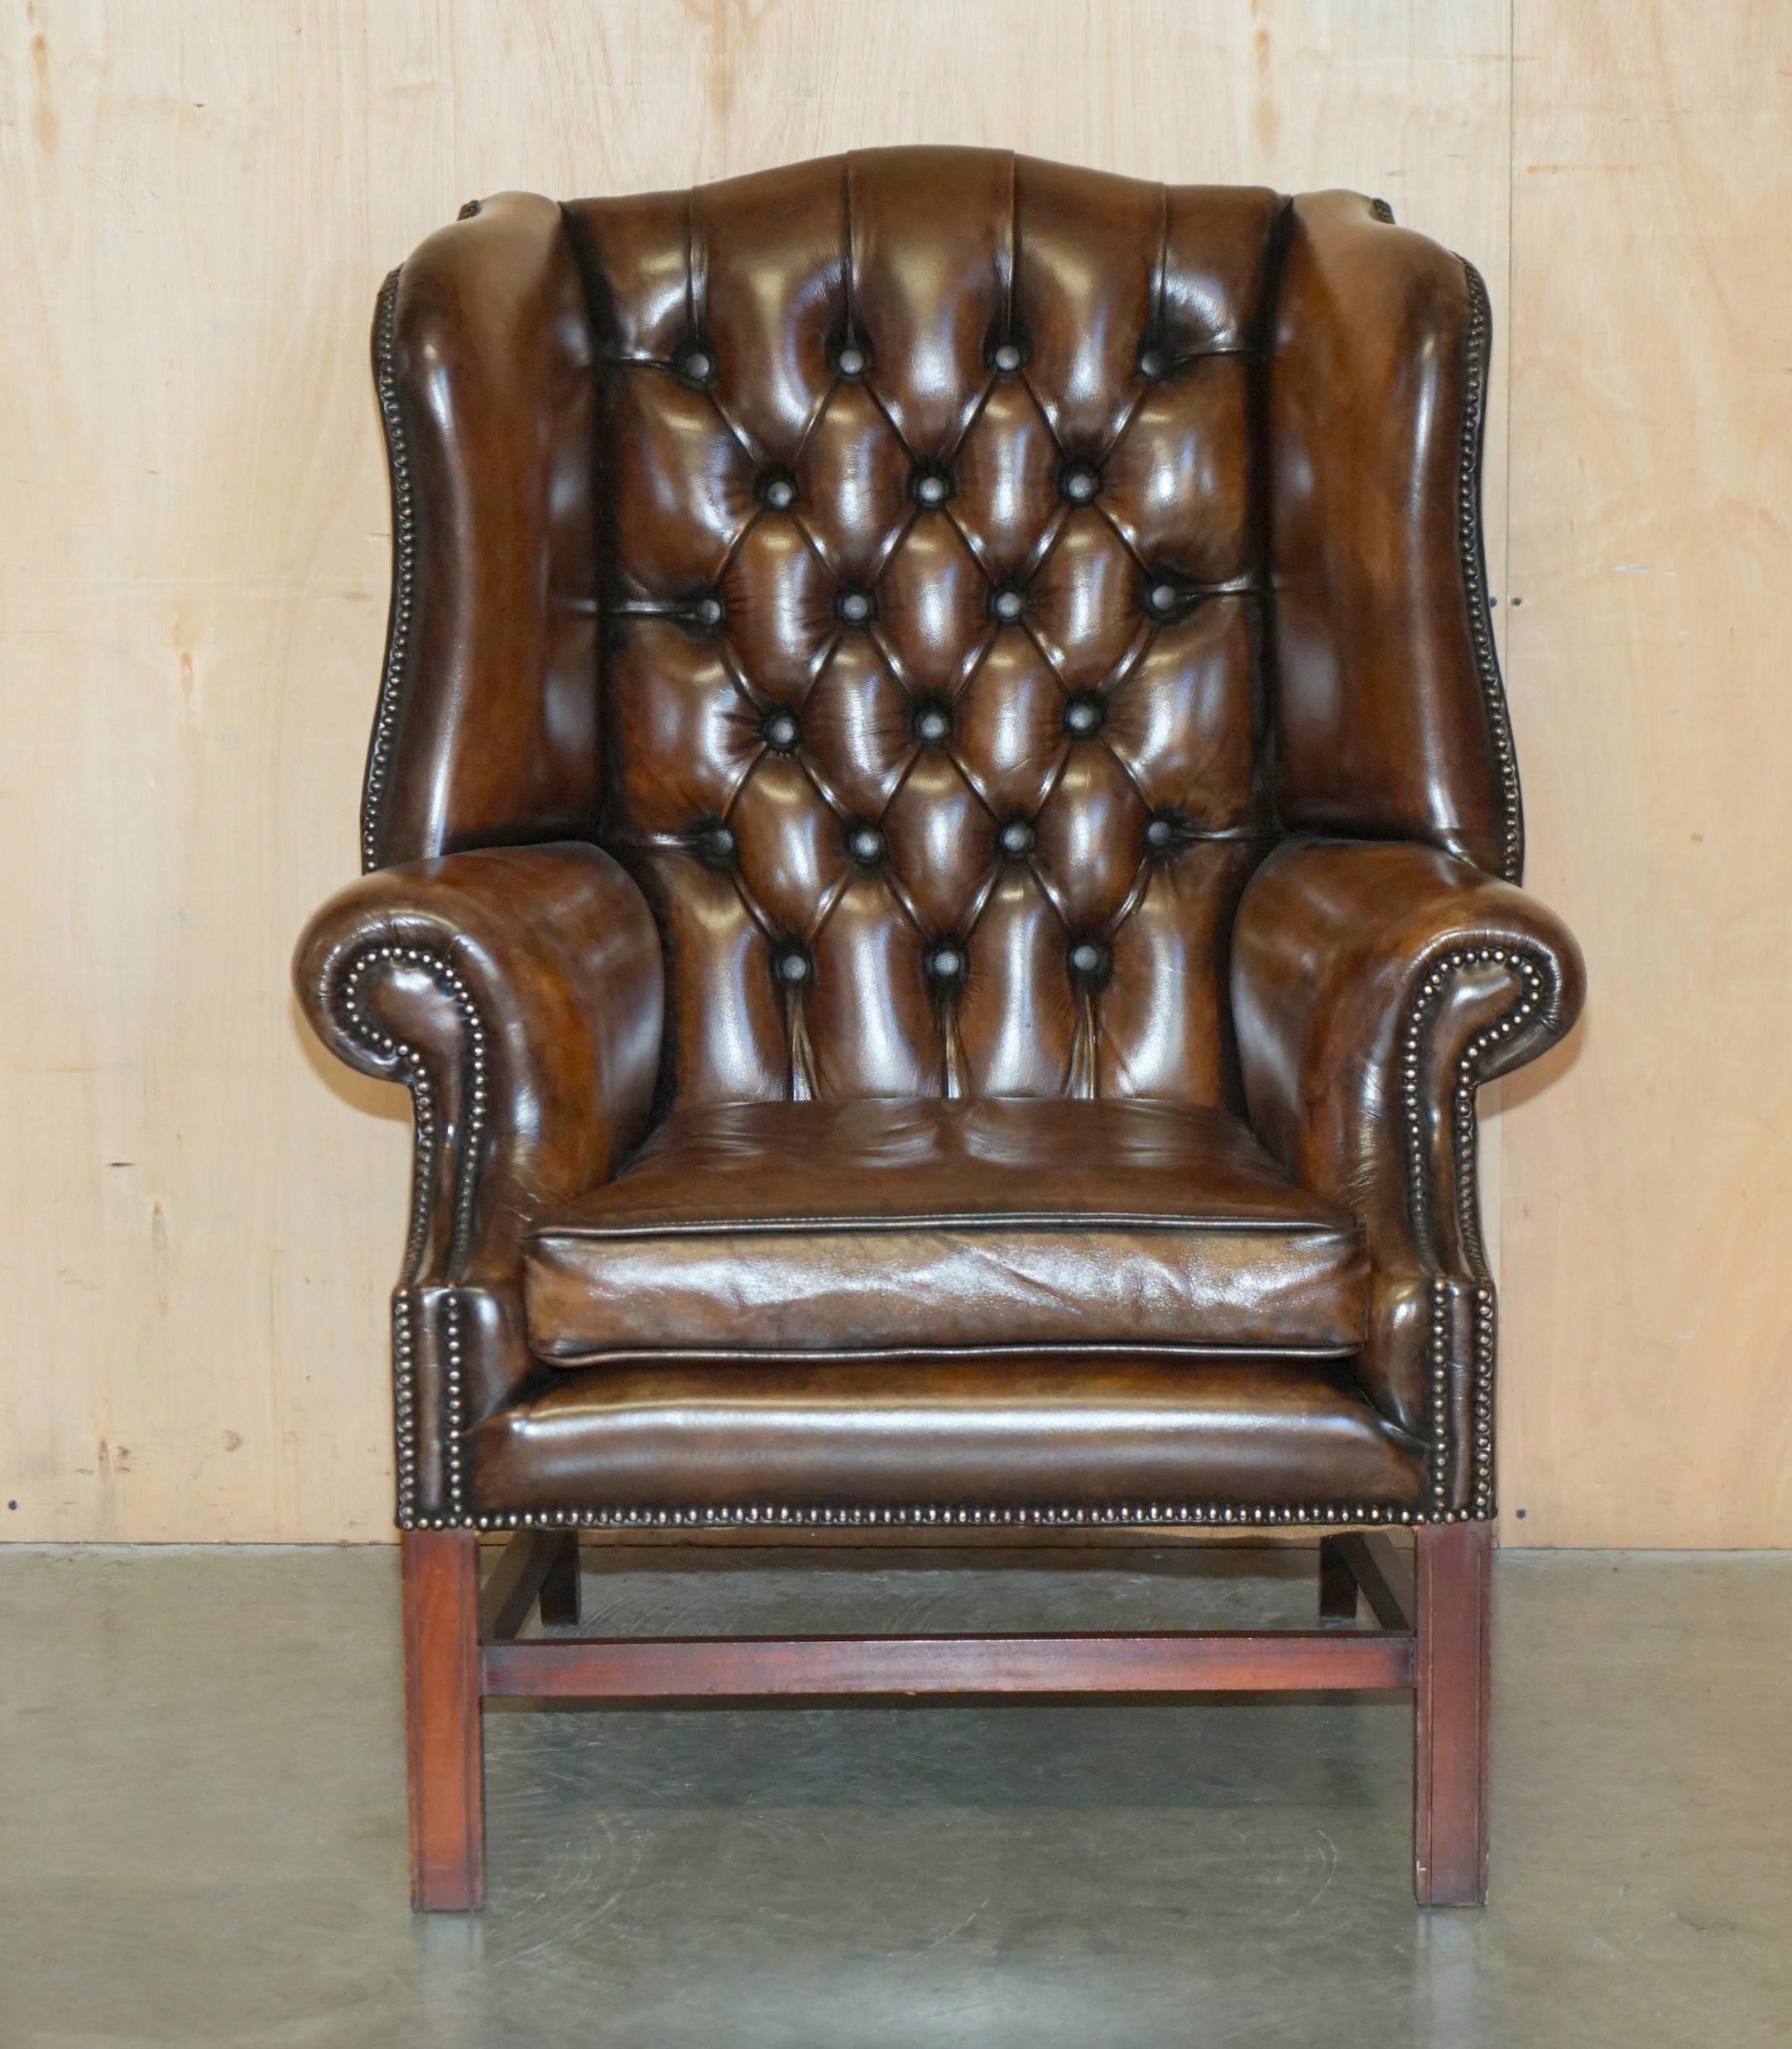 Royal House Antiques

Royal House Antiques a le plaisir de proposer à la vente ce superbe fauteuil à oreilles en cuir marron tufté Chesterfield vintage entièrement restauré.

Veuillez noter que les frais de livraison indiqués ne sont qu'un guide,